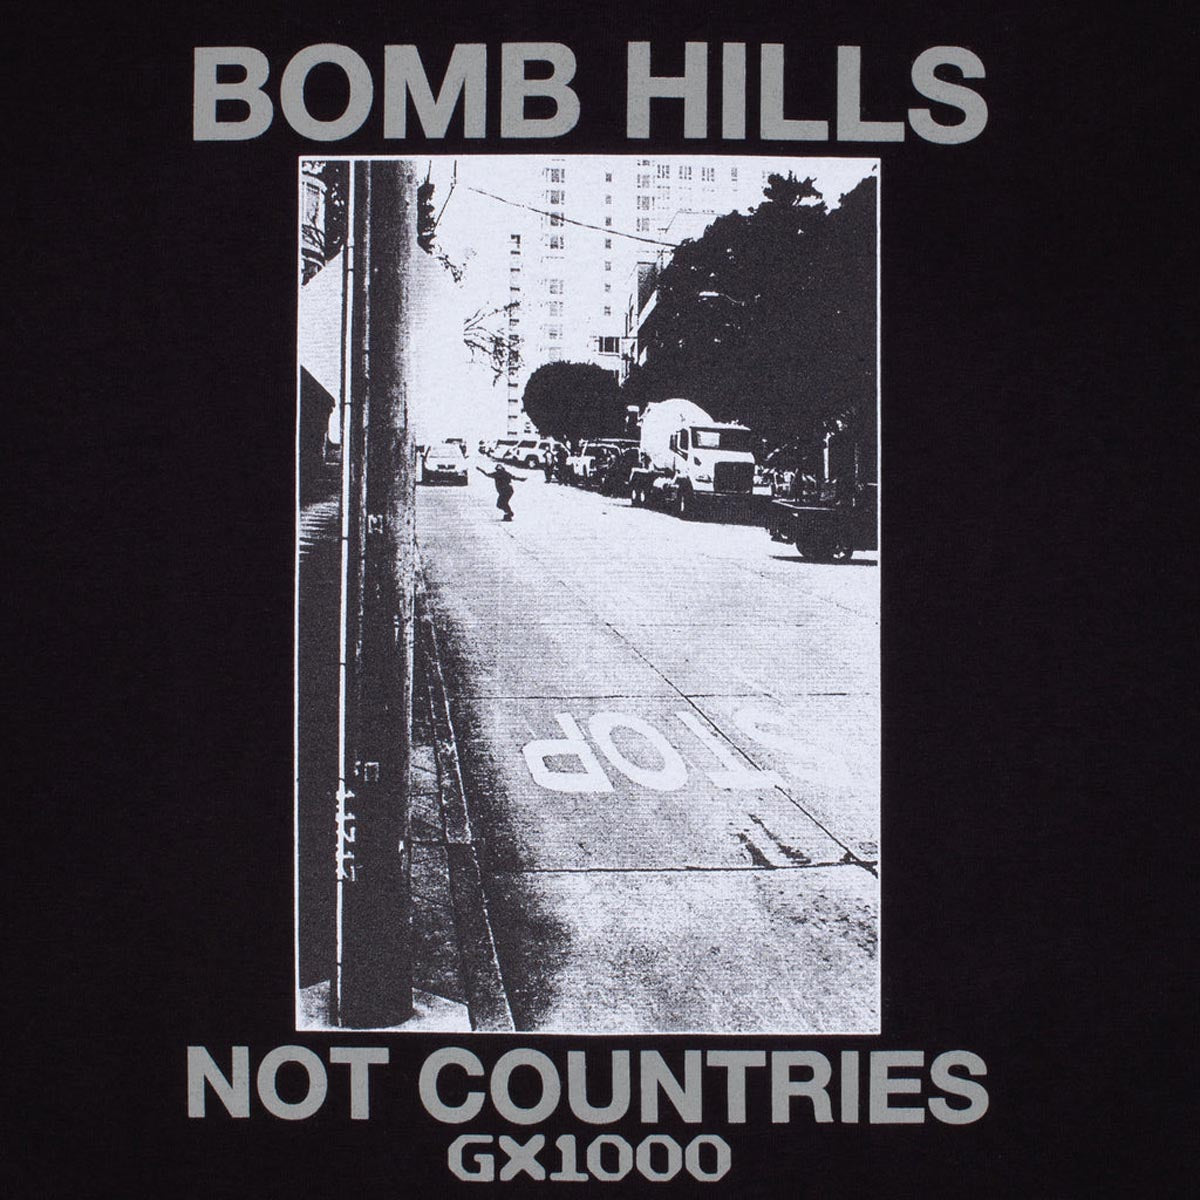 GX1000 Bomb Hills Not Countries T-Shirt - Black image 2